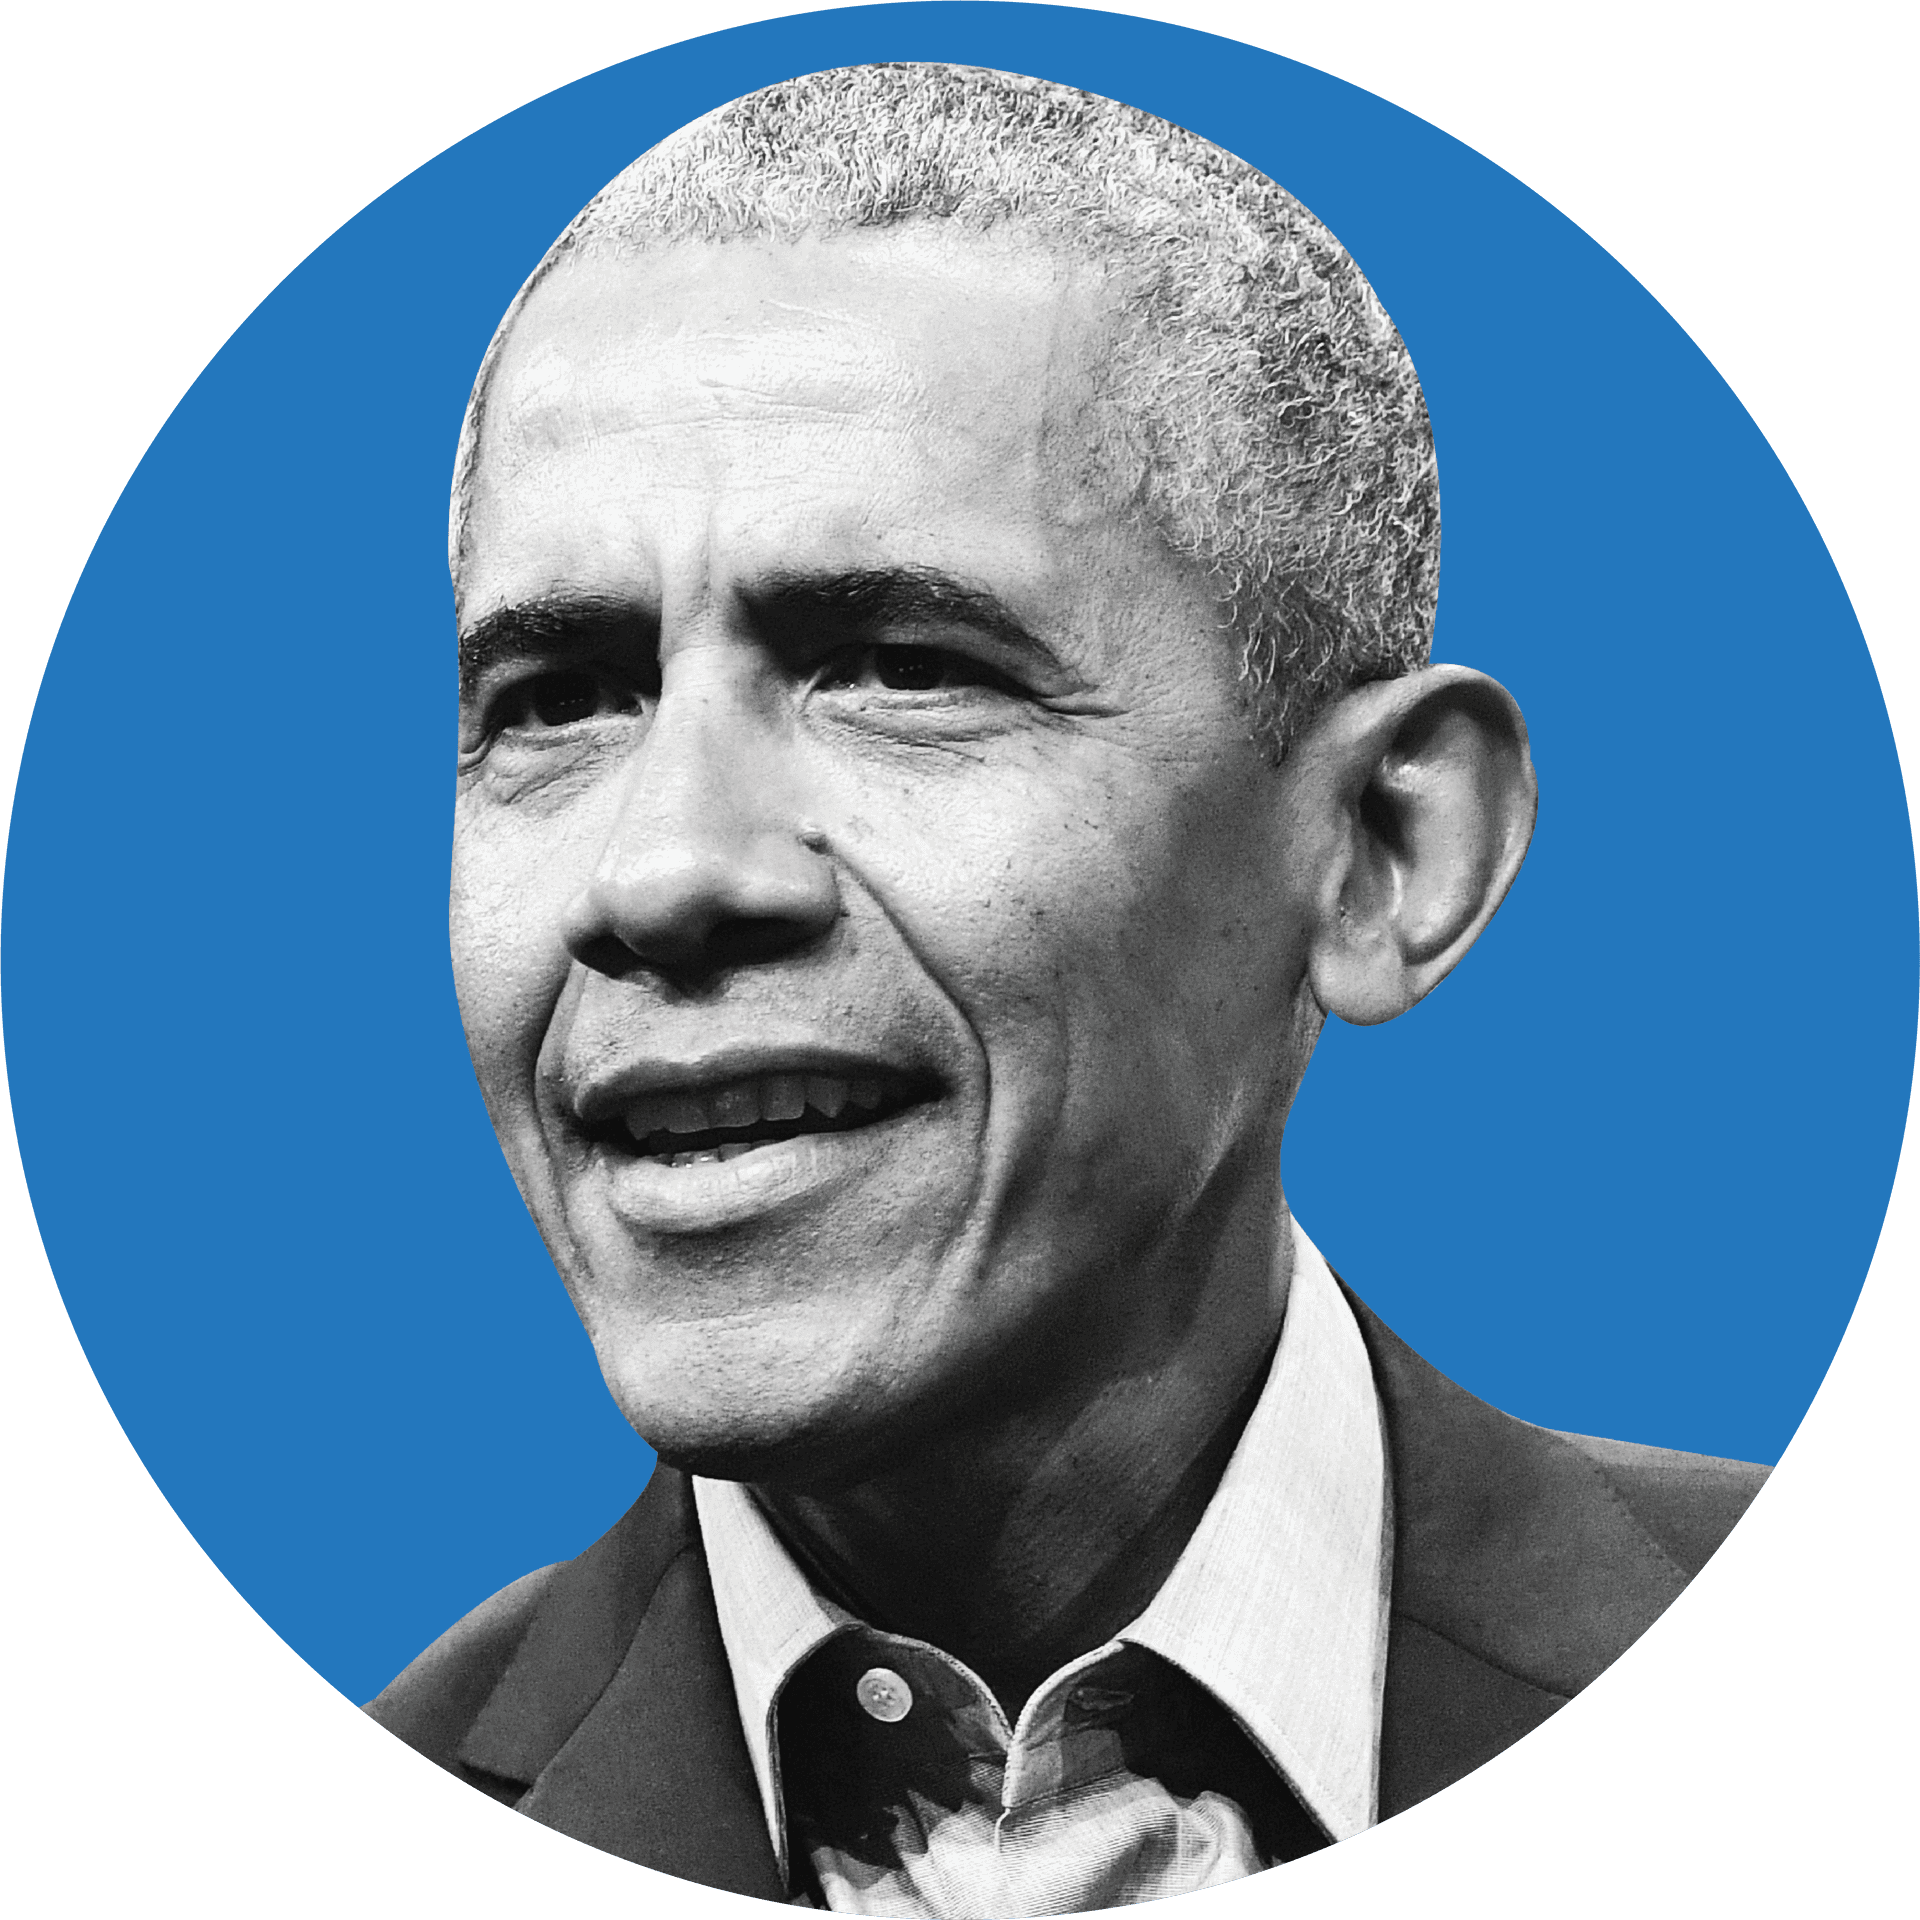 Barack Obama Portrait Blue Background PNG